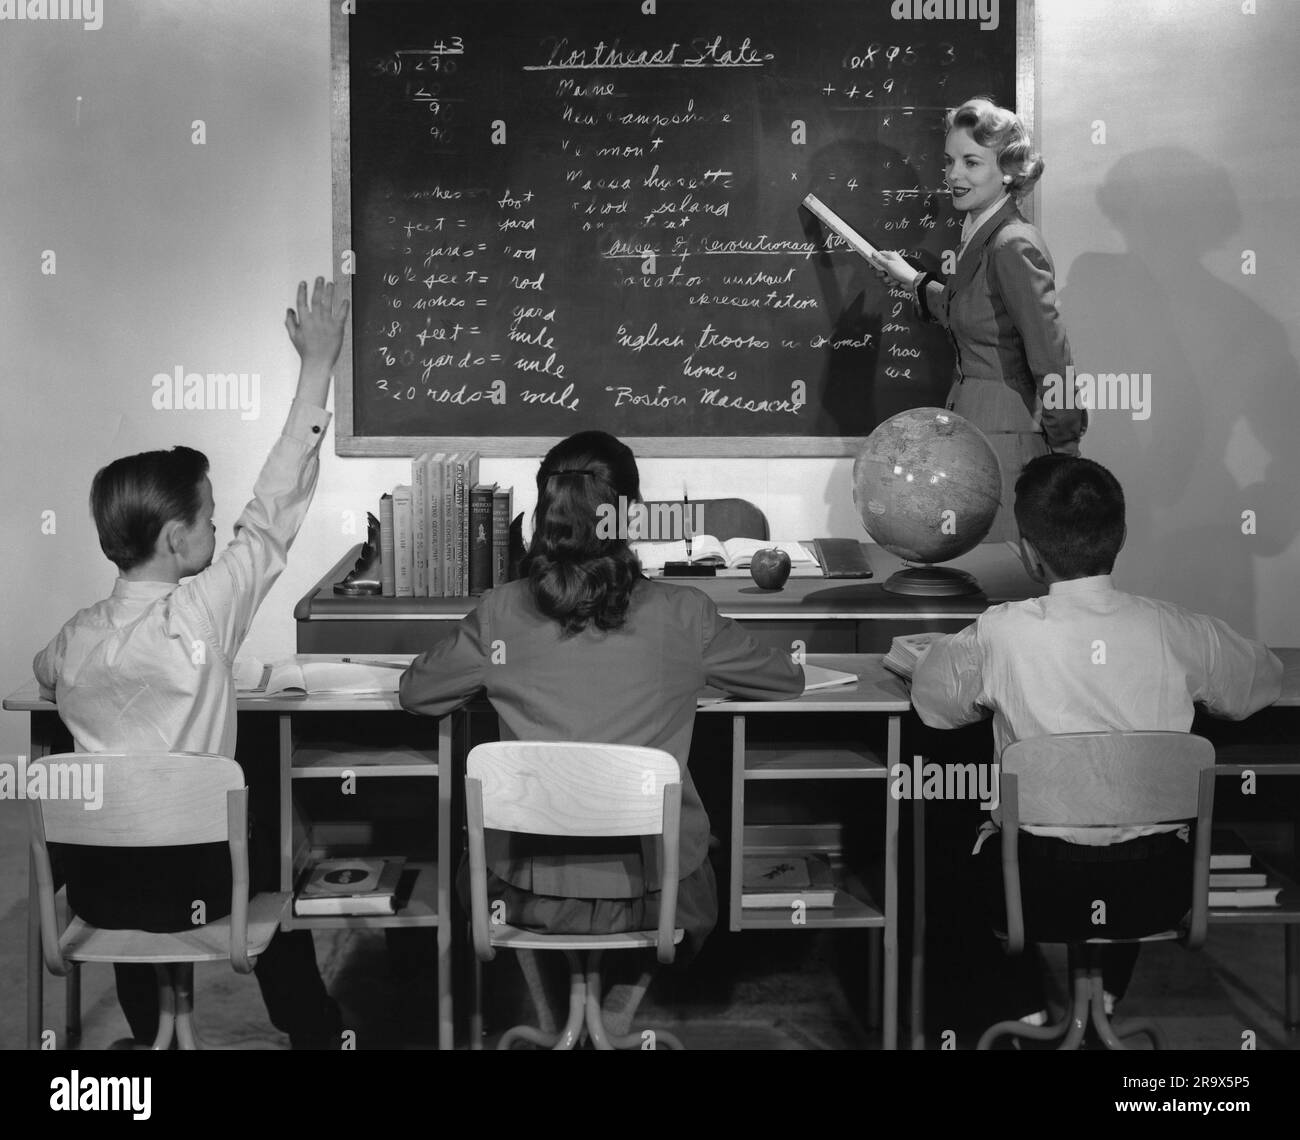 Insegnante donna in piedi alla lavagna che indica scritti utilizzando un documento arrotolato, mentre uno dei tre studenti seduti alle loro scrivanie alza la mano per fare una domanda o rispondere a una domanda Foto Stock